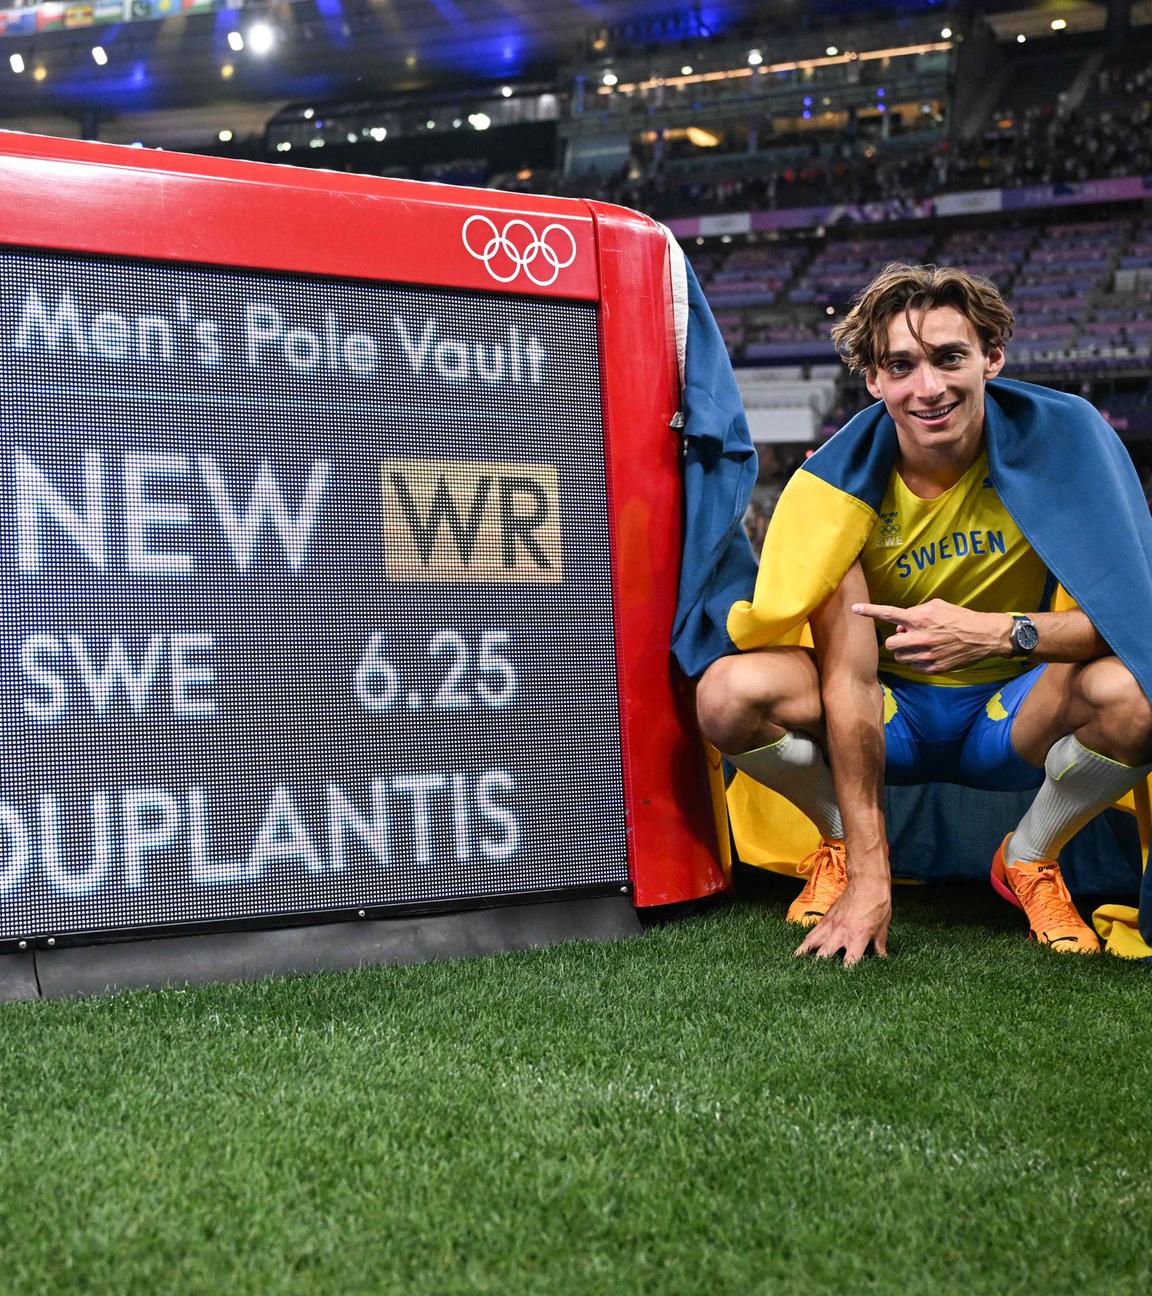 Der schwede Armand Duplantis bricht seinen ehemaligen Weltrekord mit 6,25m beim Stabhochsprung.